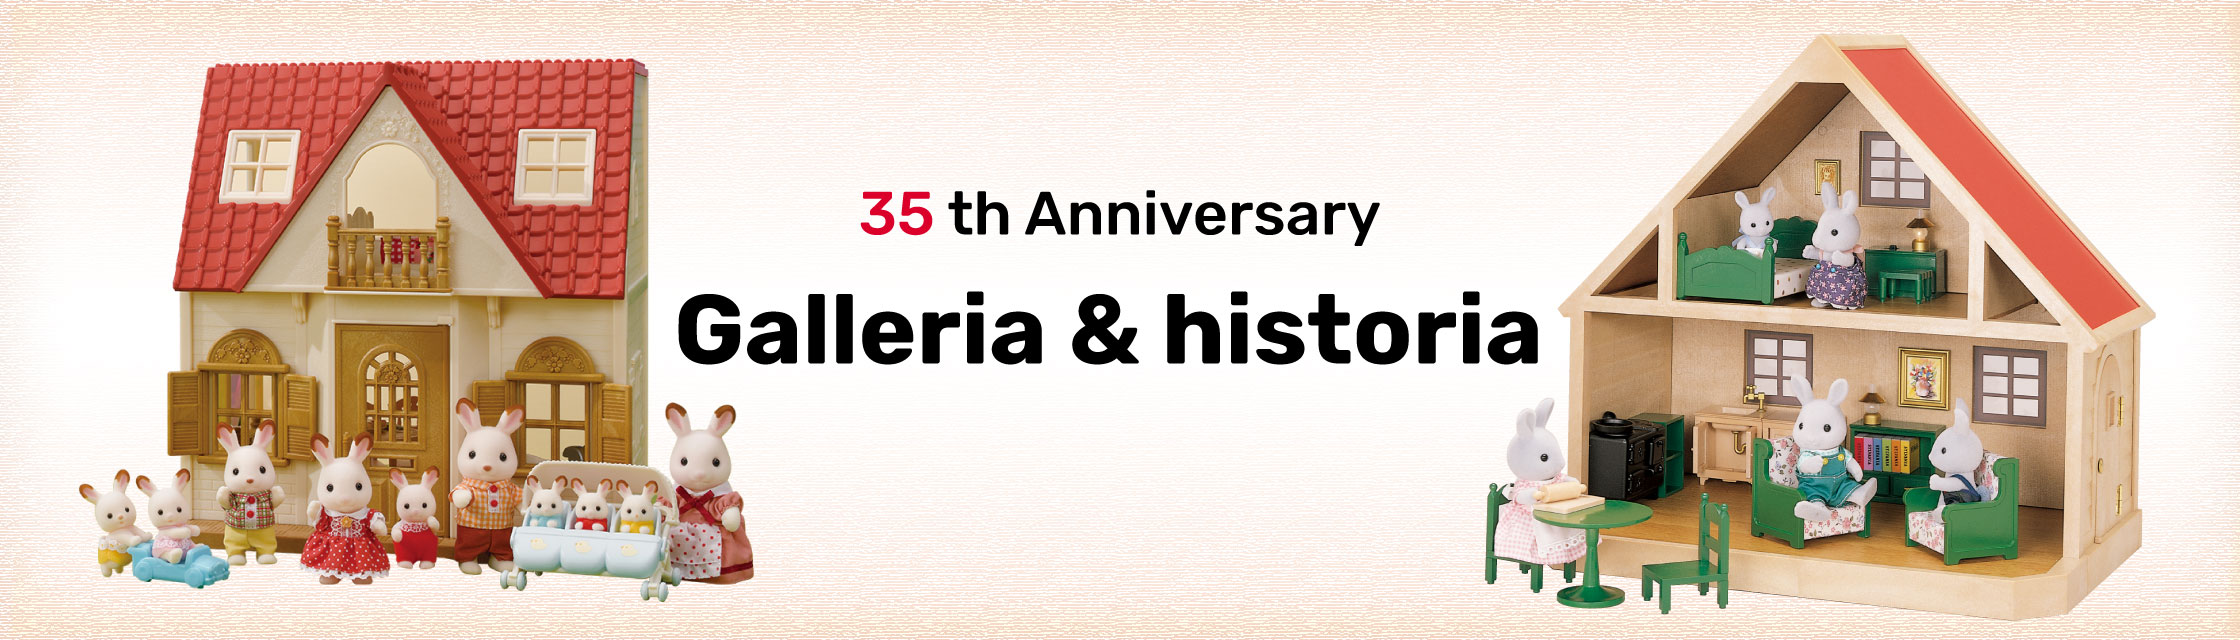 Galleria & historia